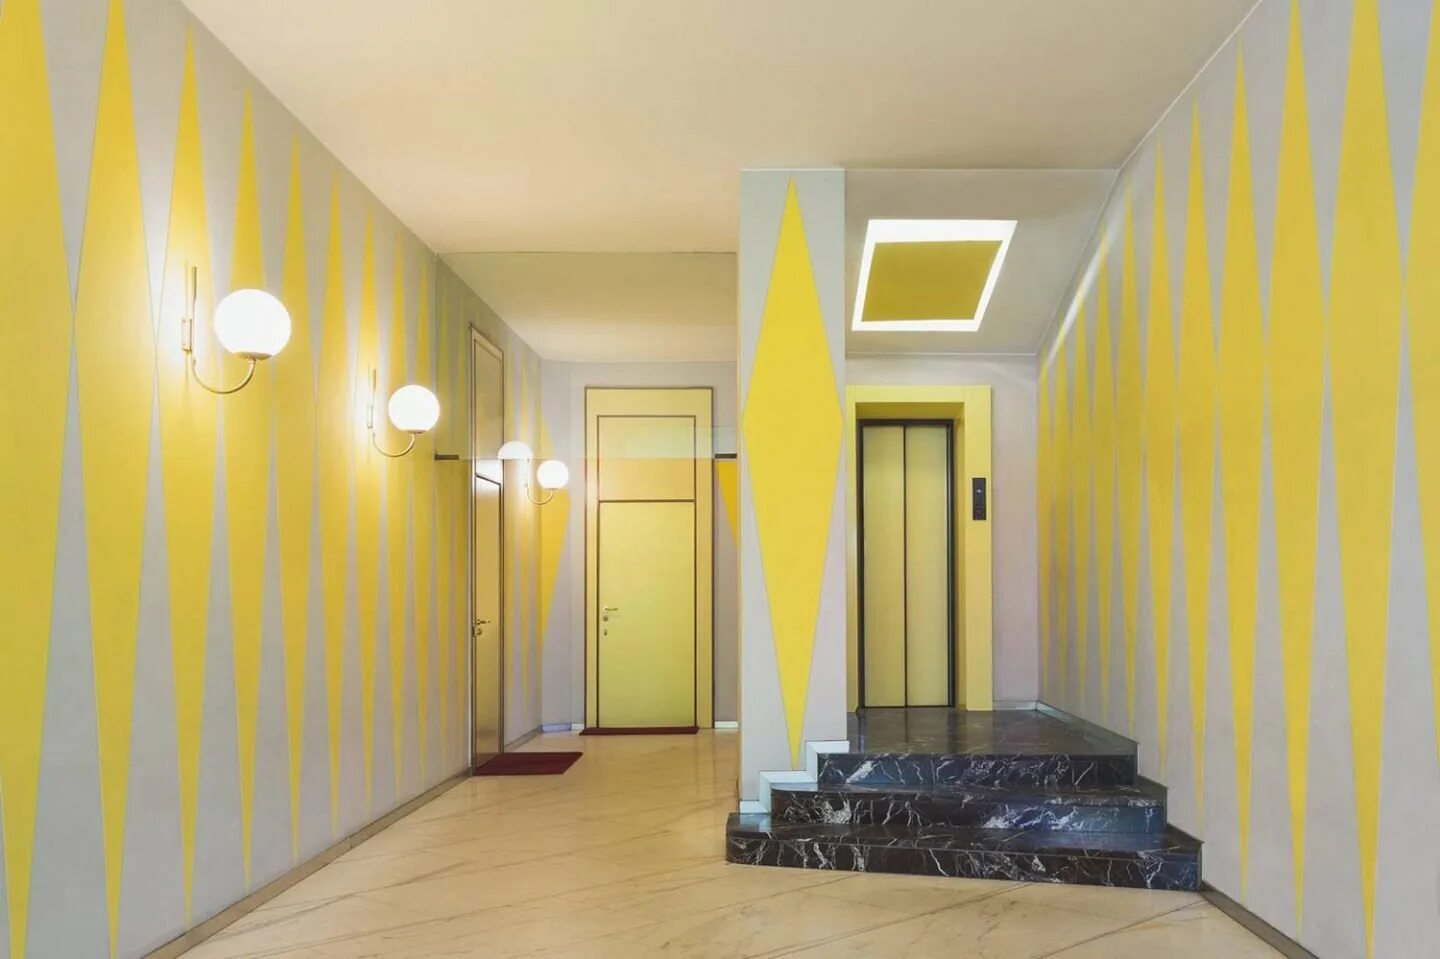 Цвет стен в коридоре. Красивые подъезды многоквартирных домов. Желтый интерьер. Желтая стена. Какой подъезд и какая квартира